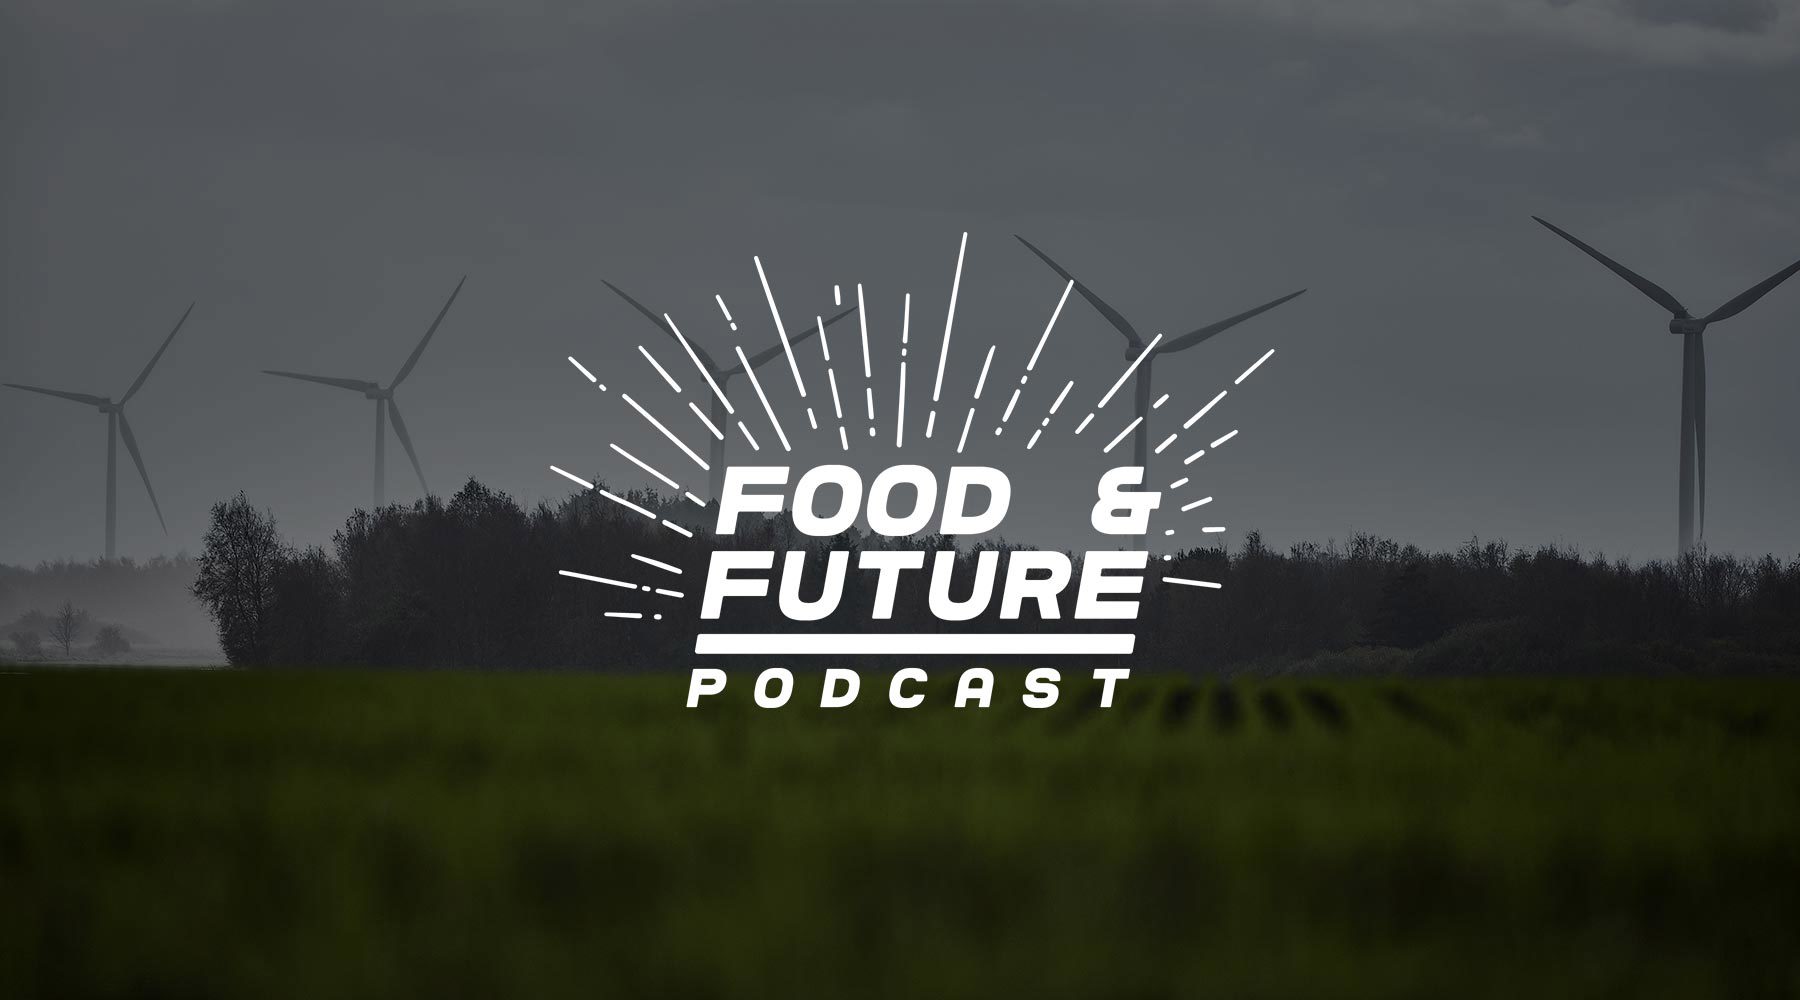 Food & Future podcast